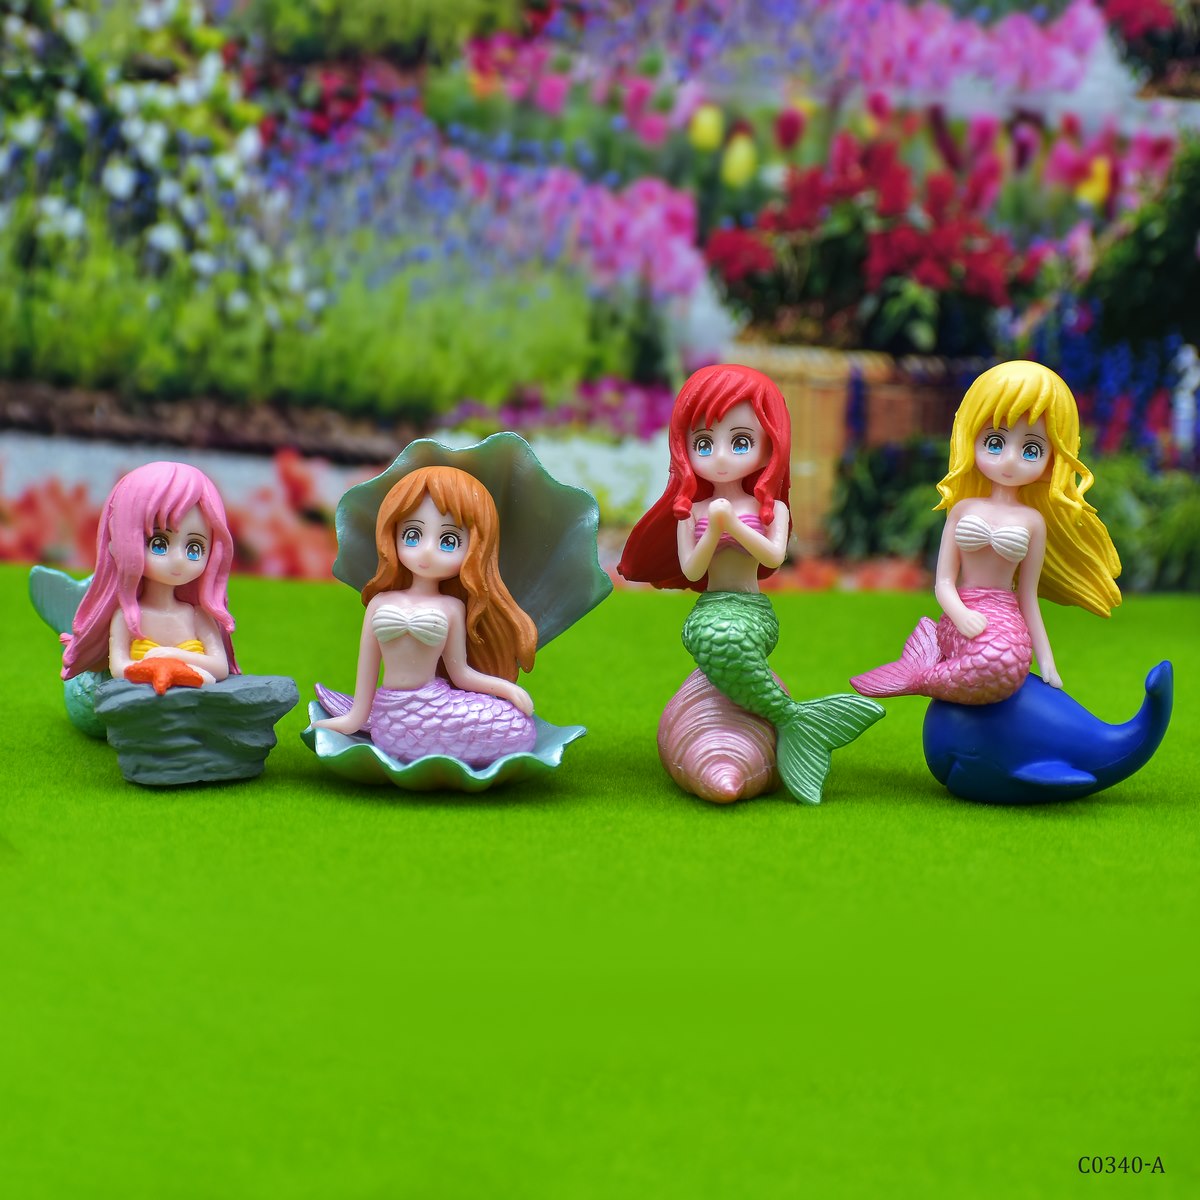 jags-mumbai Miniature Miniature Model Mermaid (4Pcs)